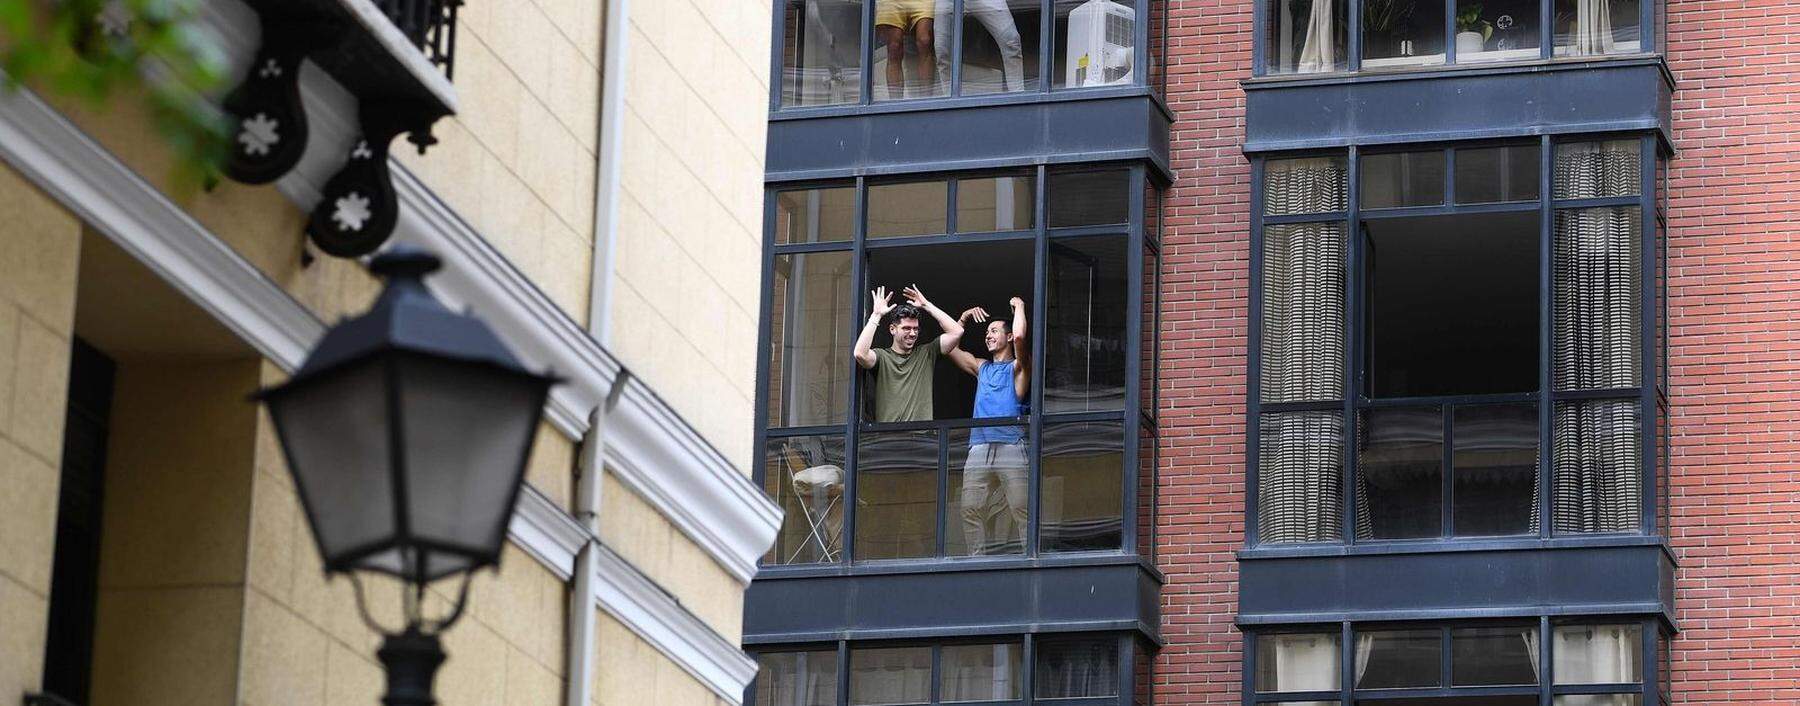 Zu Hause bleiben in Madrid: Auch in der spanischen Hauptstadt singen Menschen von ihren Balkonen gegen die Einsamkeit. 